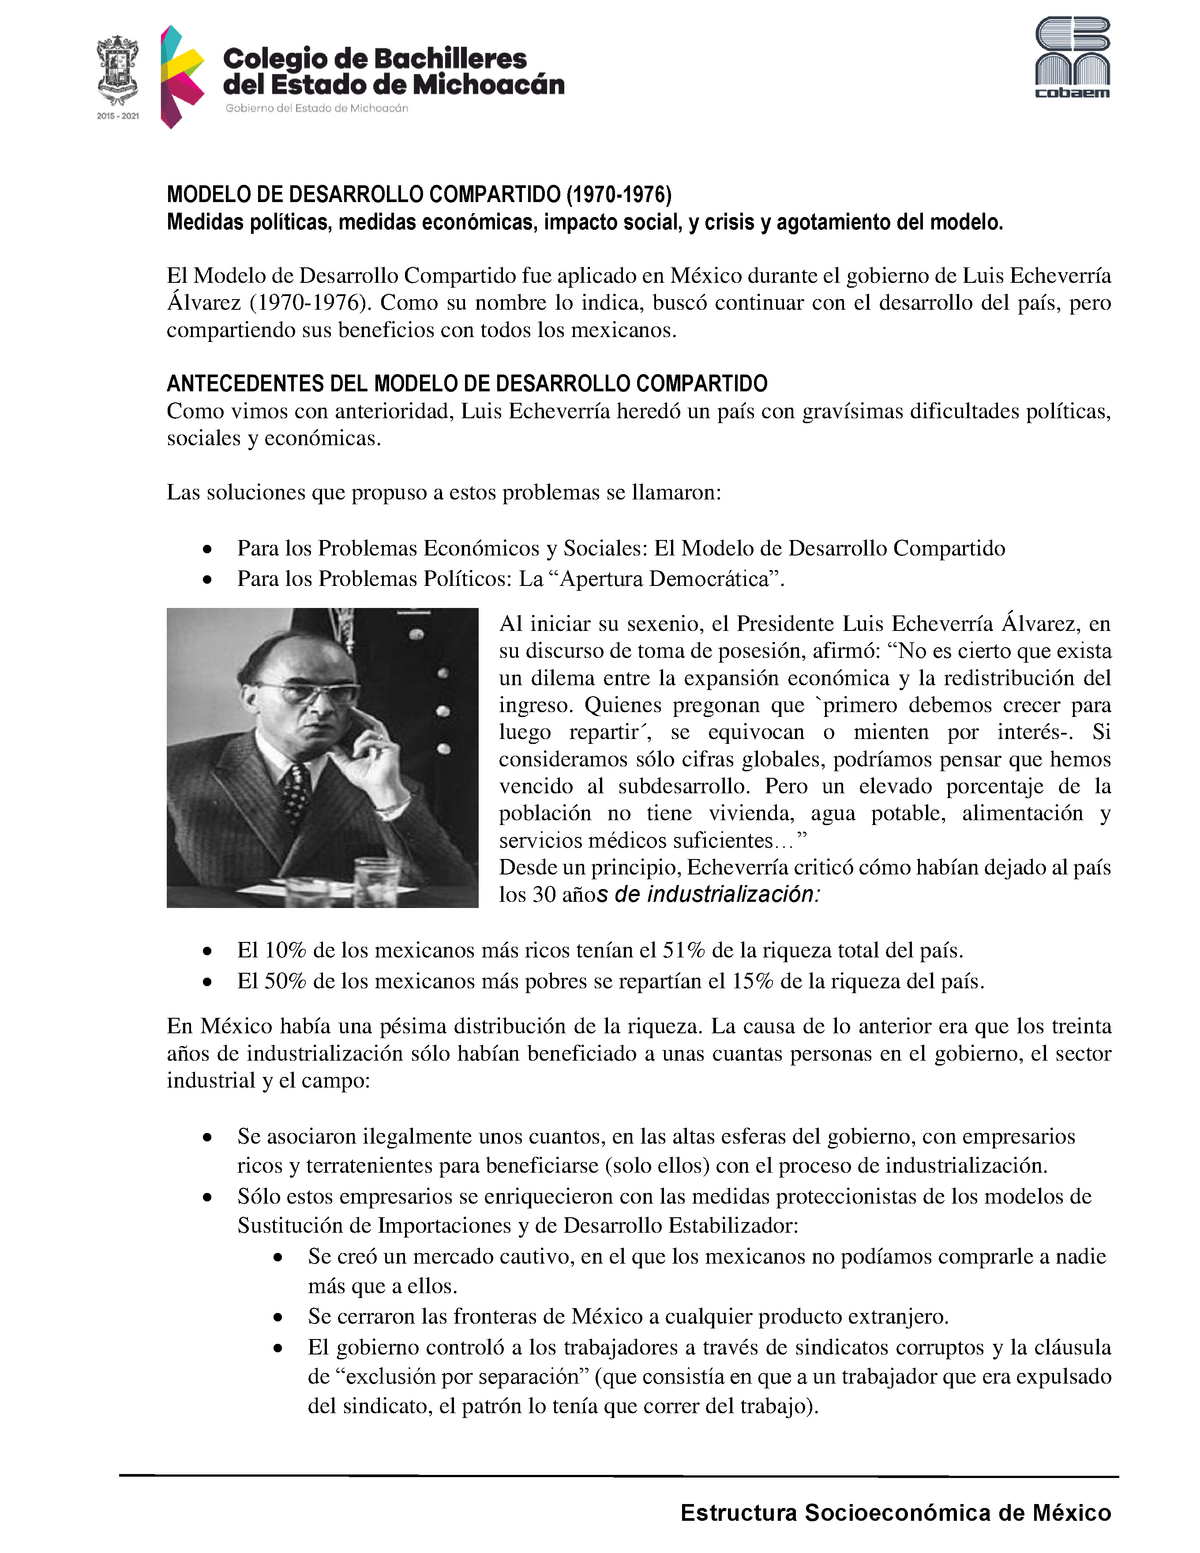  Modelo de Desarrollo Compartido (1970-1976) - derecho penal - UMO -  Studocu